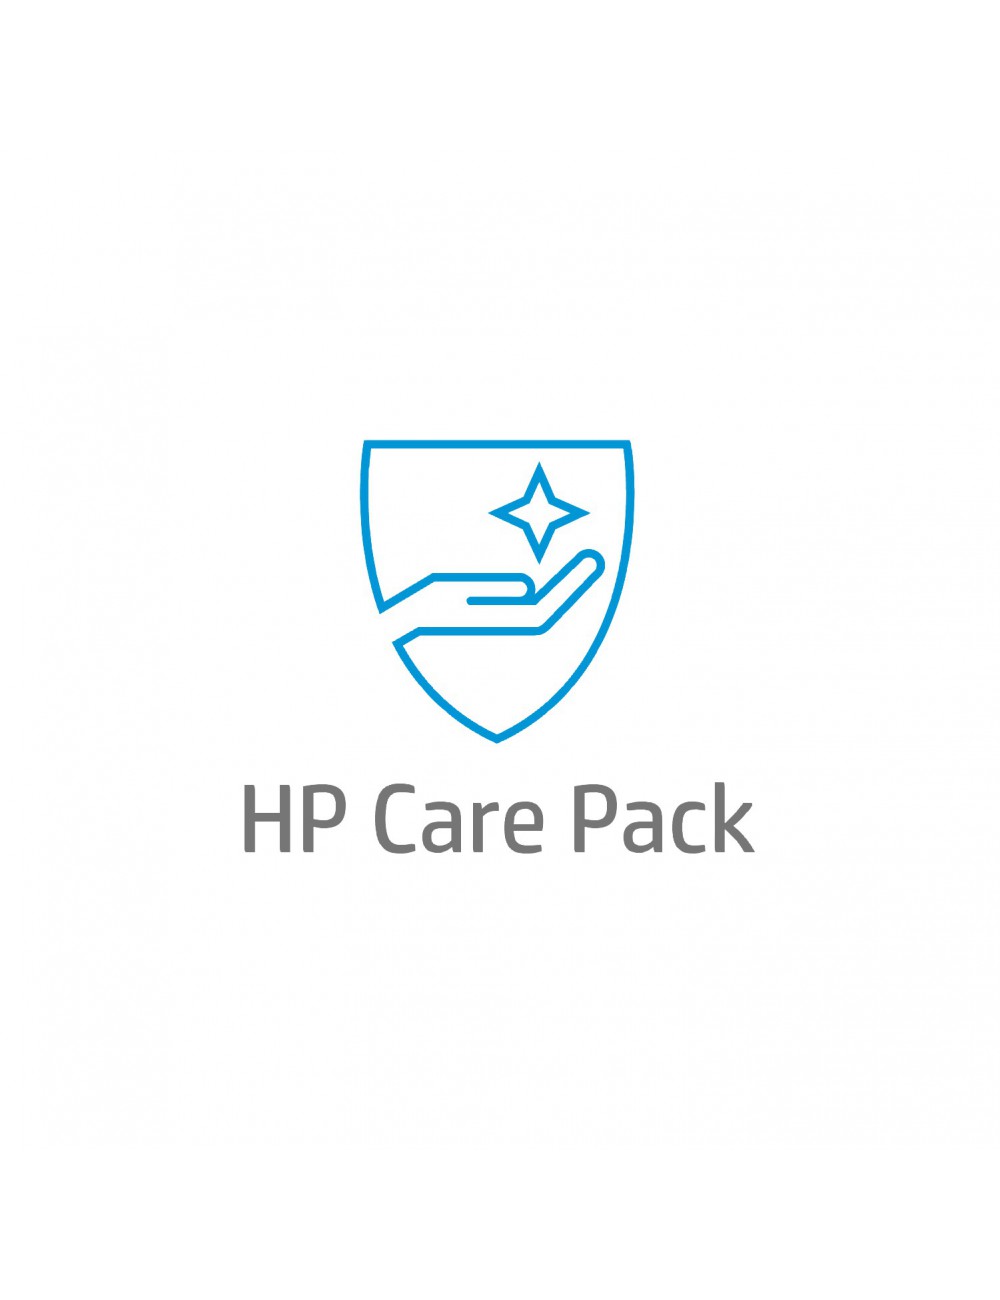 HP 1 anno di assistenza post-garanzia on-site, con risposta entro il giorno lavorativo successivo, solo per desktop